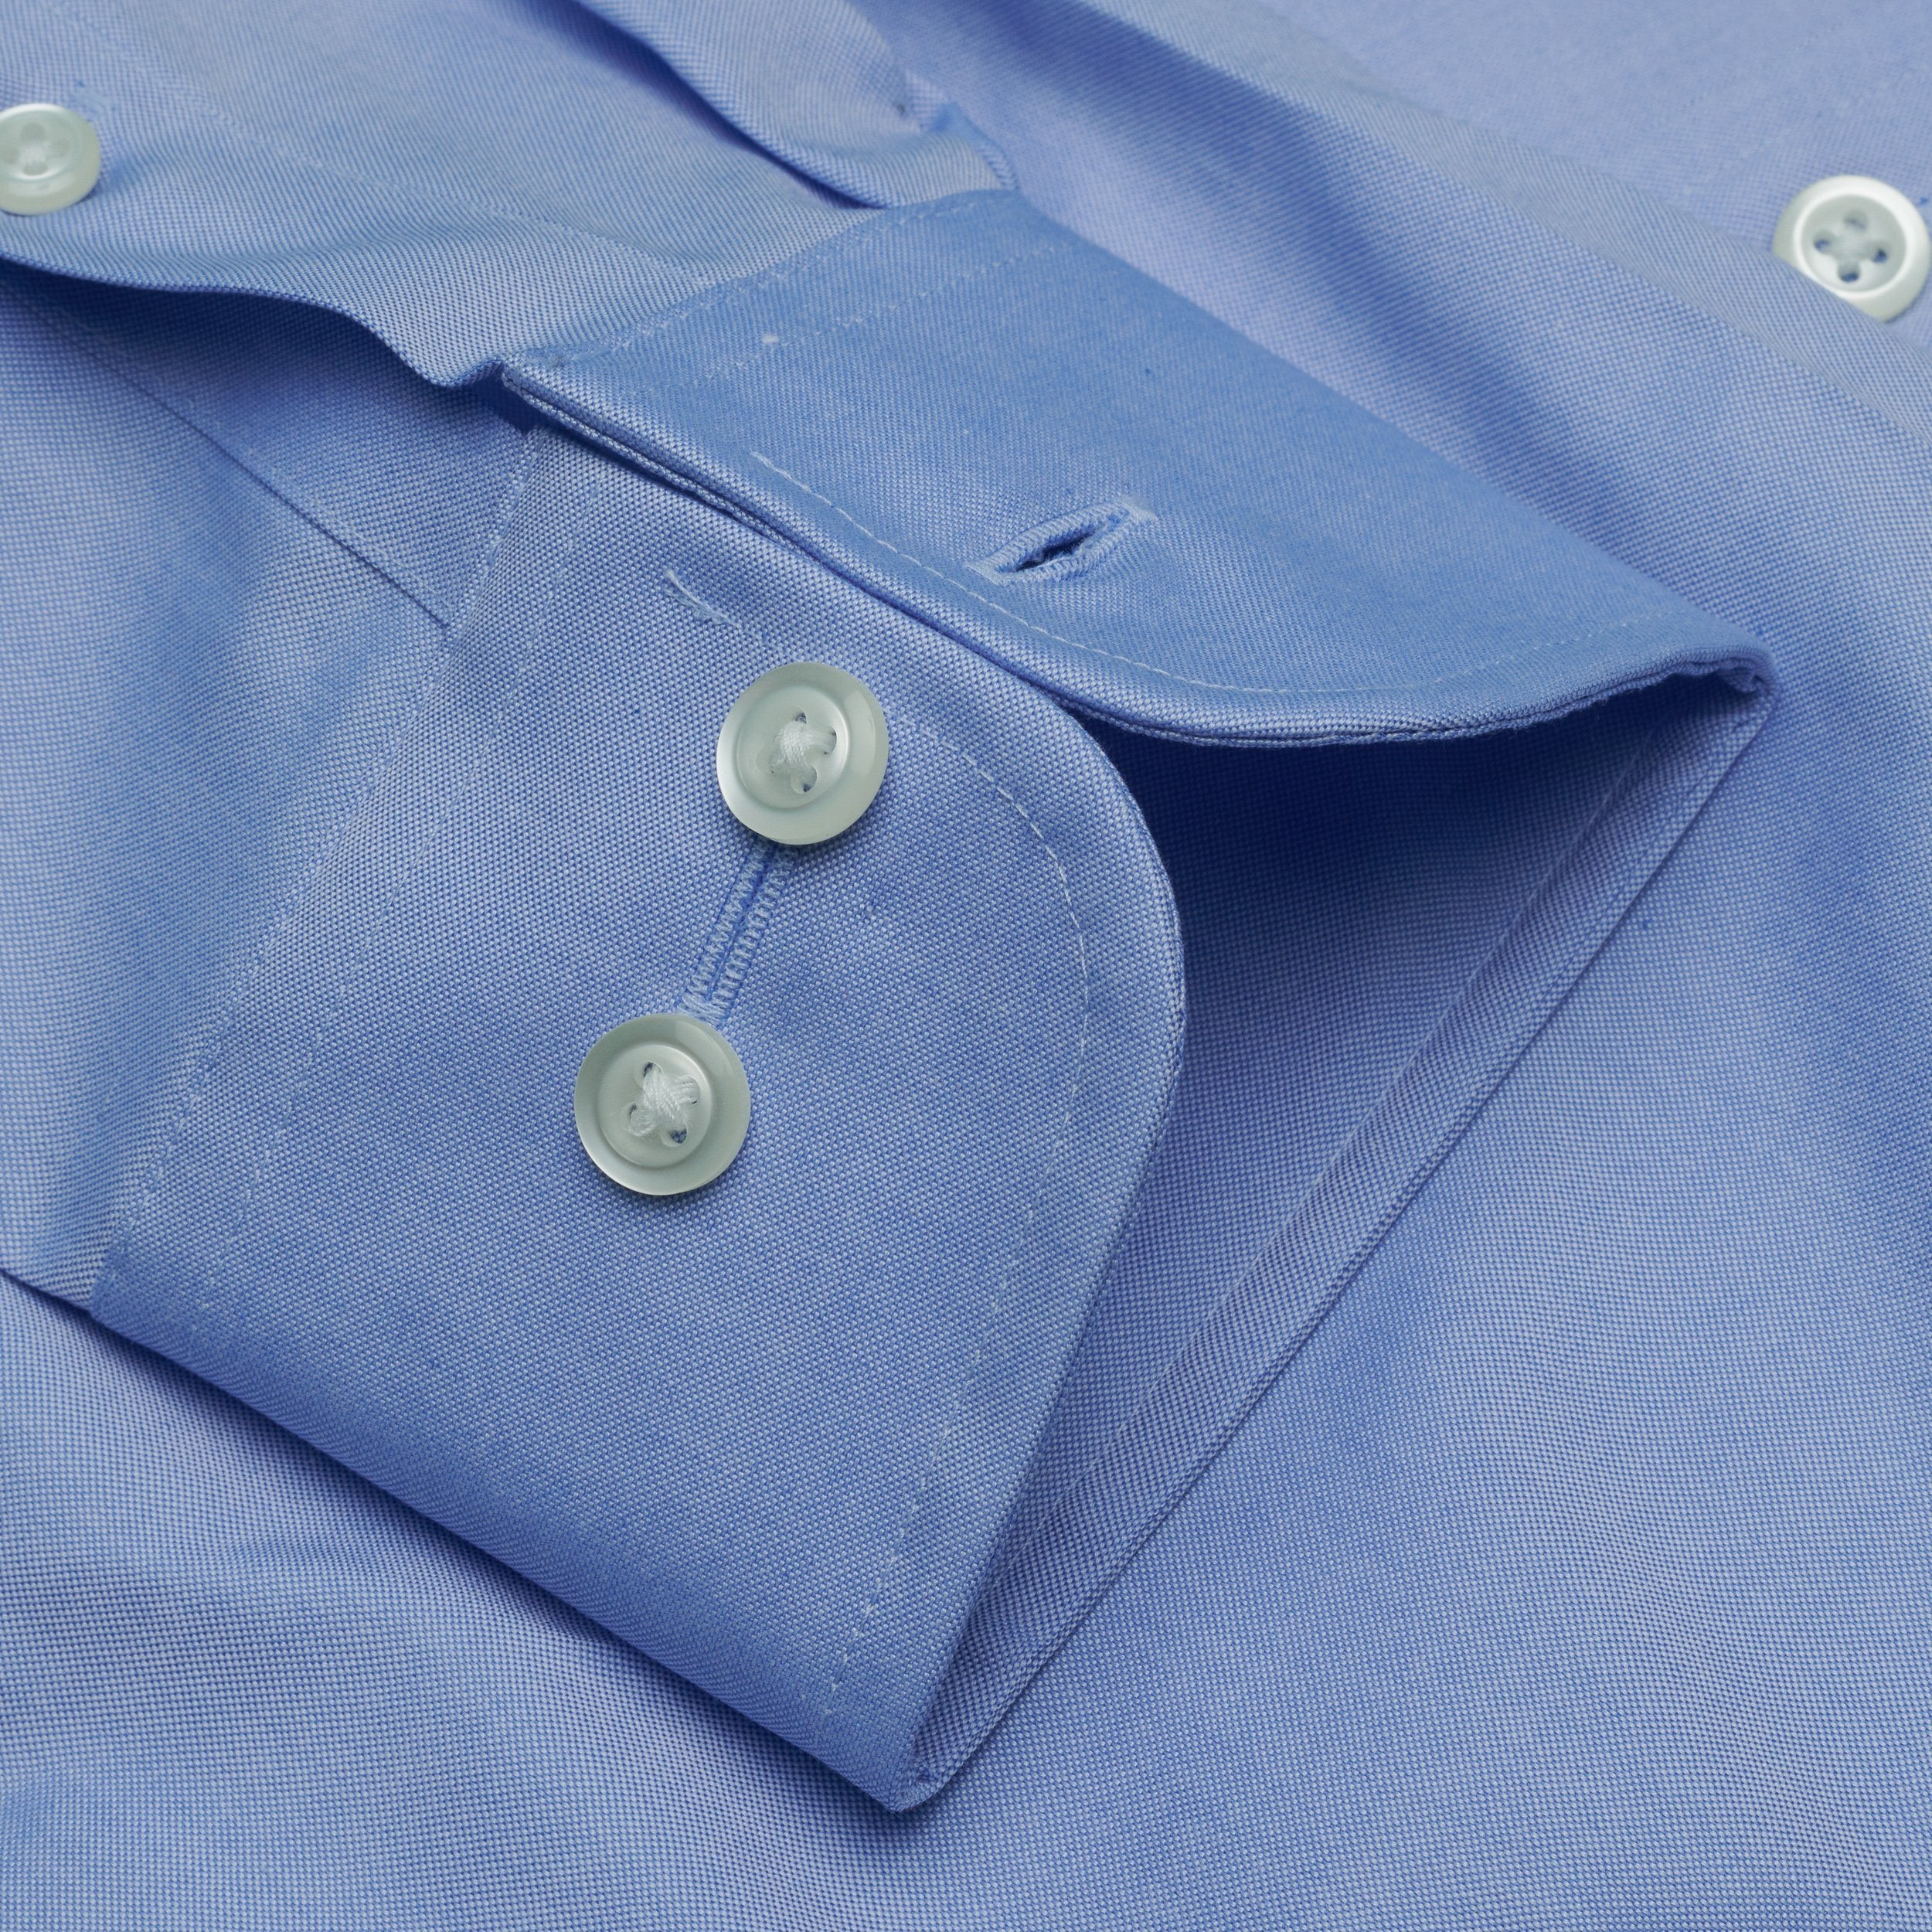 000-Blue-Straight Collar-Tailor Fit Best Dress Shirt 